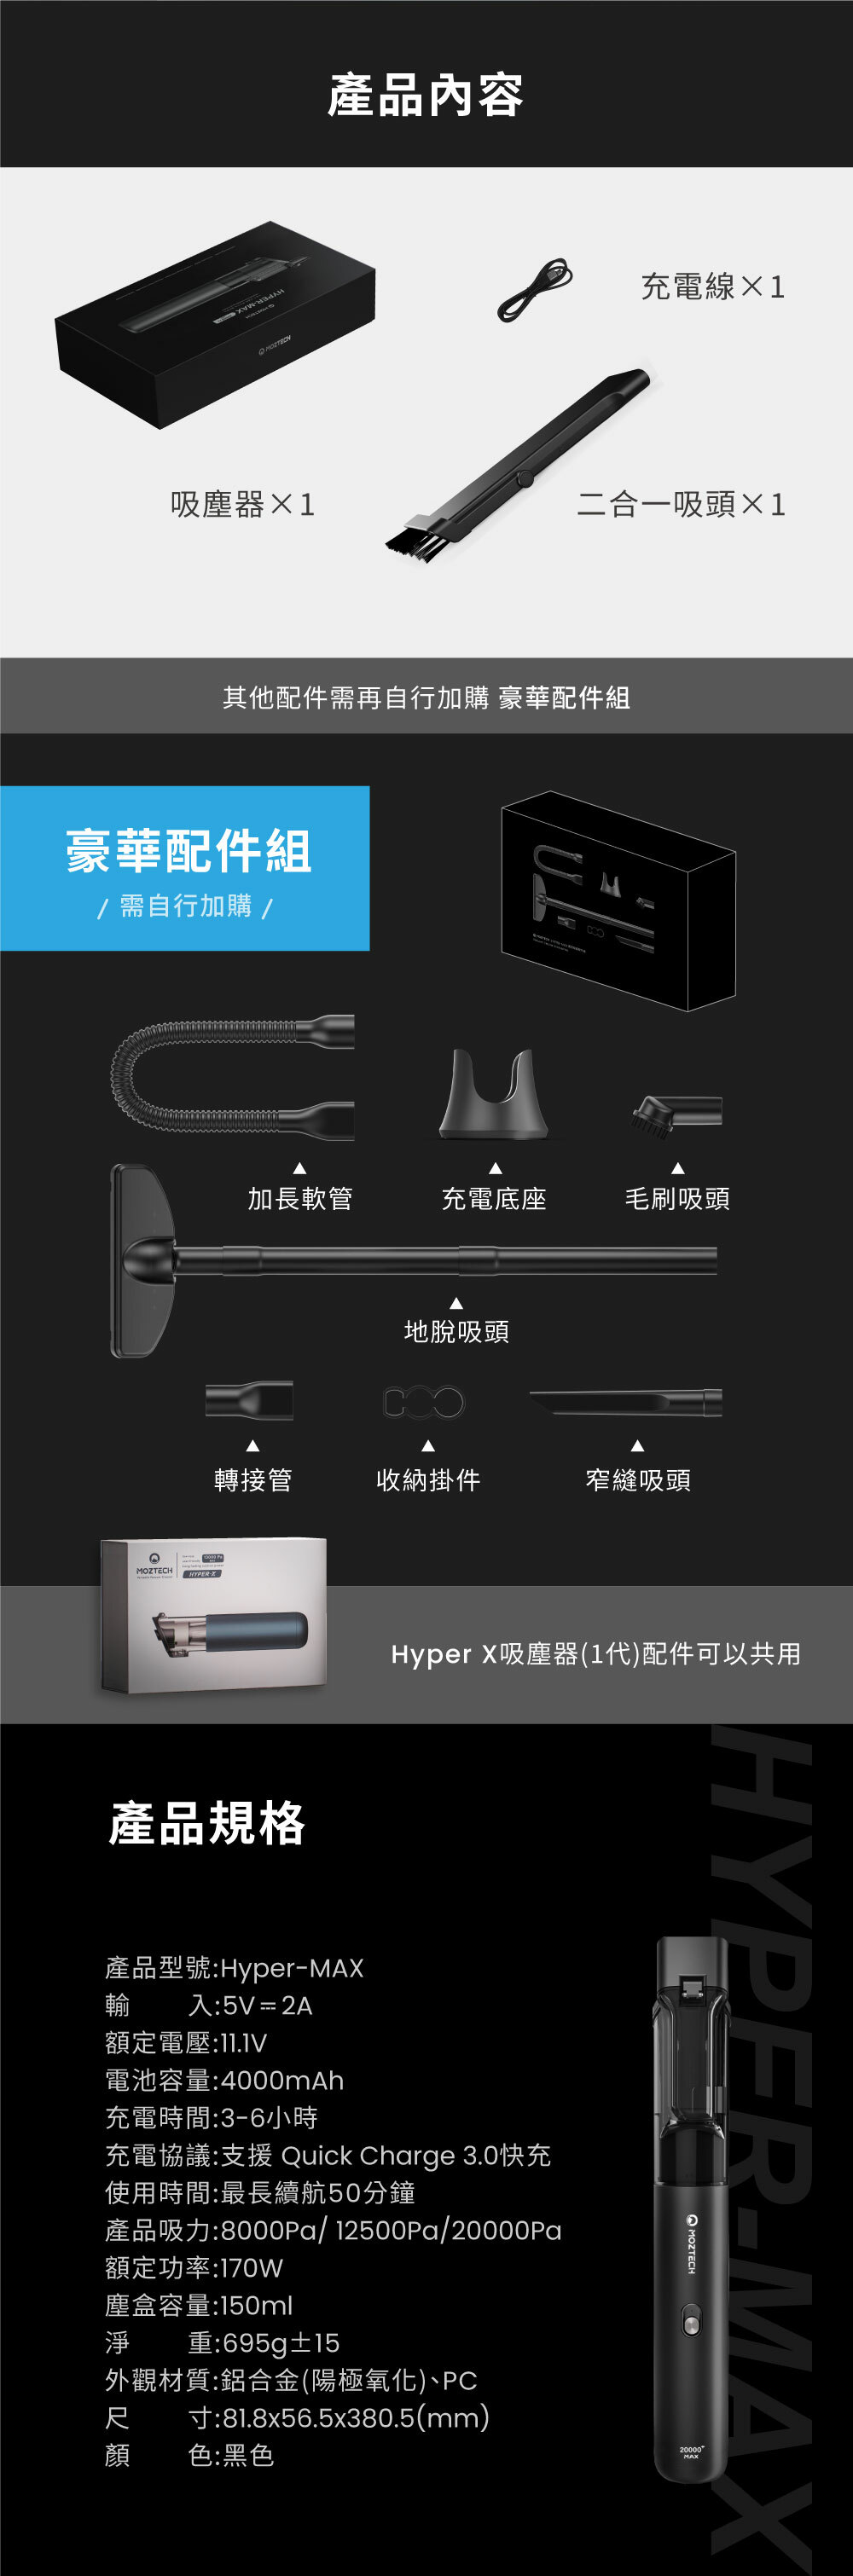 產品內容充電線吸塵器1二合一吸頭1其他配件需再自行加購 豪華配件組豪華配件組/需自行加購/MOZTECH HYPER加長軟管充電底座毛刷吸頭地脫吸頭轉接管收納掛件窄縫吸頭產品規格產品型號:Hyper-MAX輸入:5V=2AHyperX吸塵器(1代)配件可以共用額定電壓:電池容量:4000mAh充電時間:3-6小時充電協議:支援 Quick Charge 3.0快充使用時間:最長續航50分鐘產品吸力:8000Pa/ 12500Pa/20000Pa額定功率:170W塵盒容量:150ml淨重:695g±15外觀材質:鋁合金(陽極氧化)、PC寸:81.8x56.5x380.5(mm)尺顏色:黑色HYPER-MAXMOZTECH20000MAX